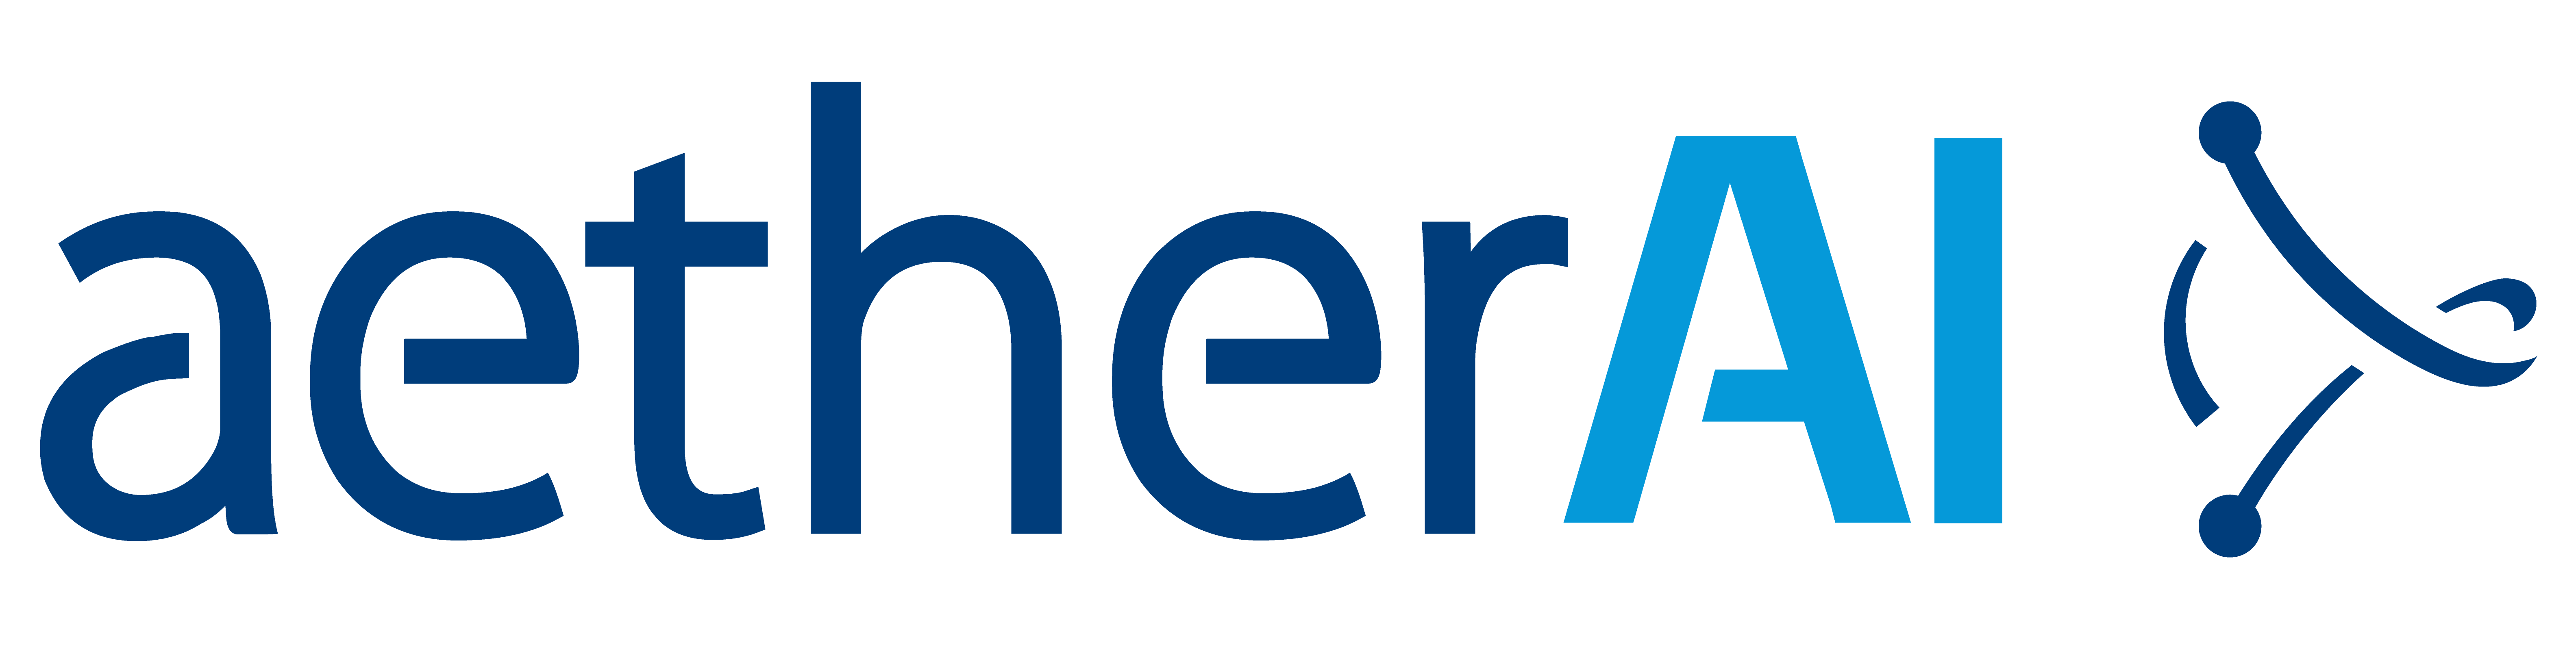 aetherai_logo(blue).png